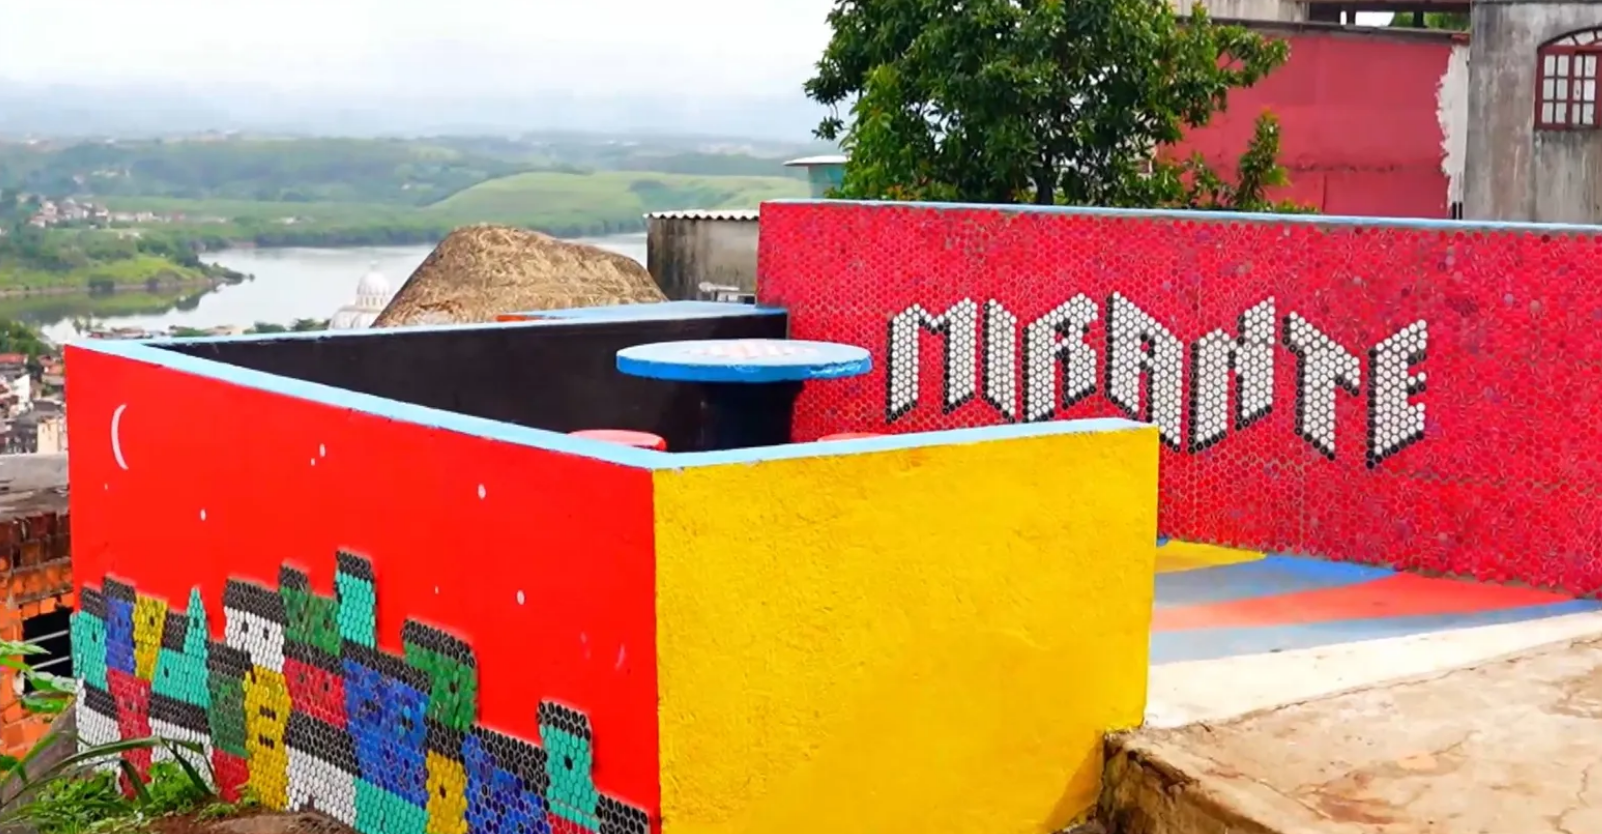 Moradores do Morro do Cabral se uniram para transformar o mirante, que agora é uma verdadeira obra de arte a céu aberto